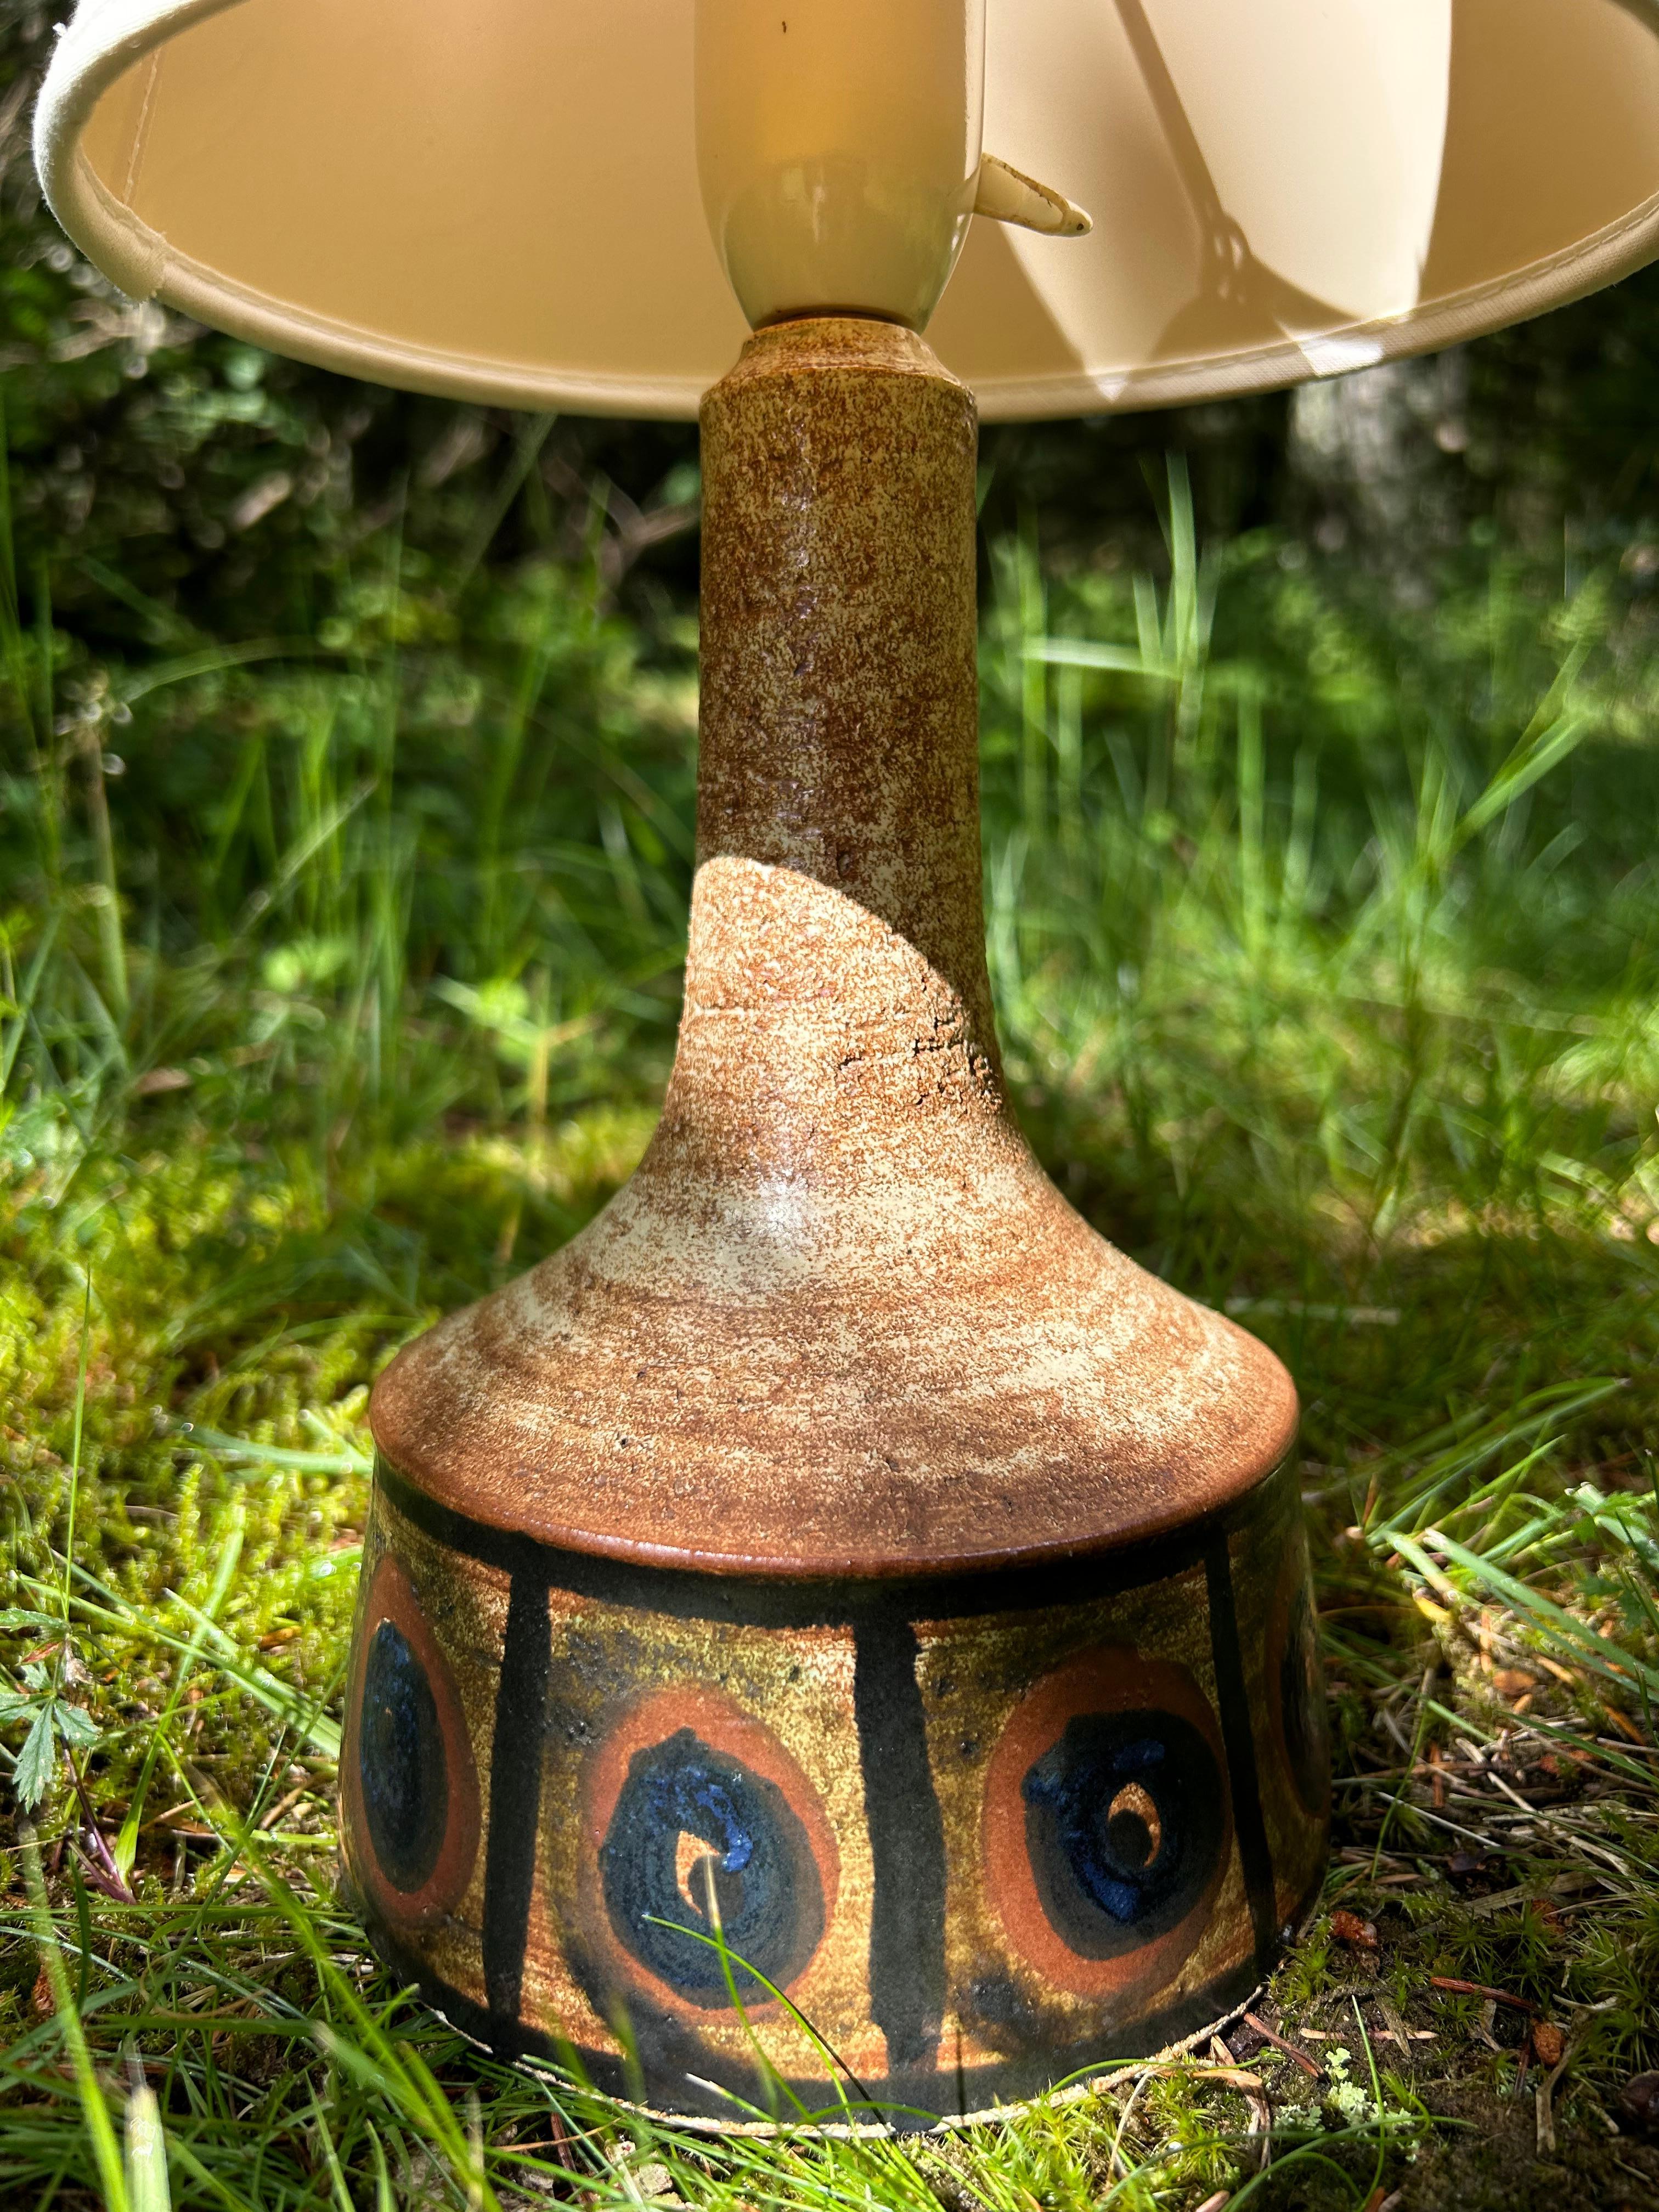 Dänische Keramik-Tischlampe aus den 1970er Jahren vom dänischen Keramikhersteller Axella.

Die Lampe ist in gutem Zustand mit einer schönen Glasur im Boden und einer unglasierten Oberseite, die einen guten Kontrast zu der Lampe gibt.

Die dänische